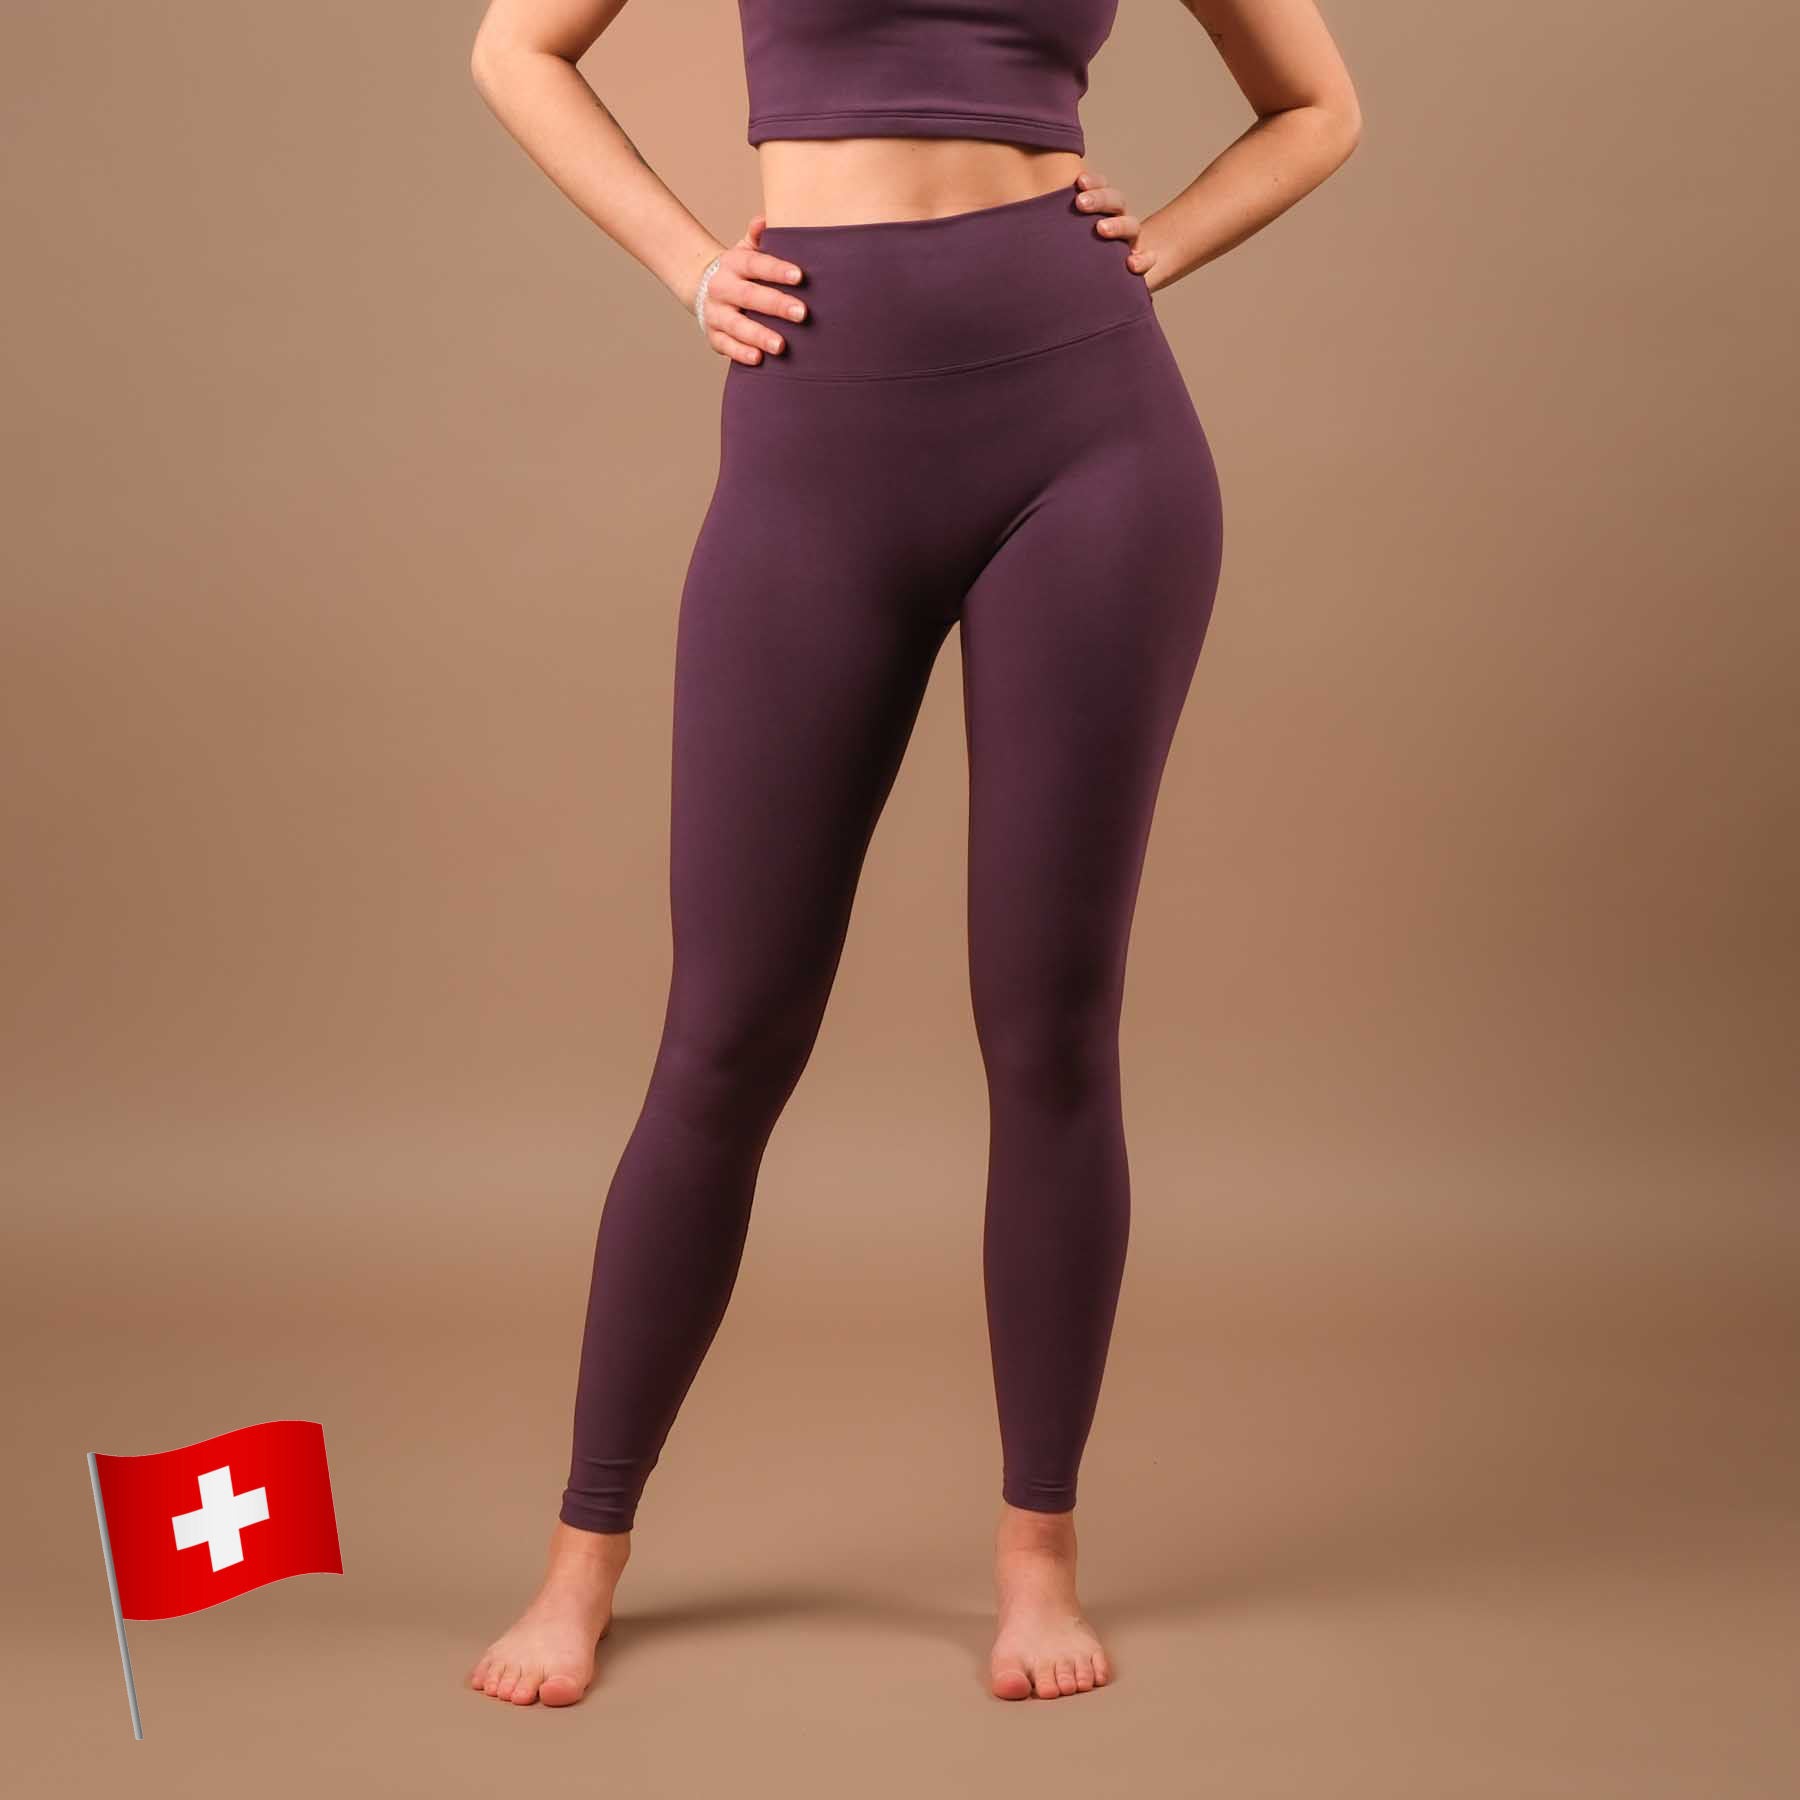 Leggings de yoga Comfy plum, fabriqués en Suisse